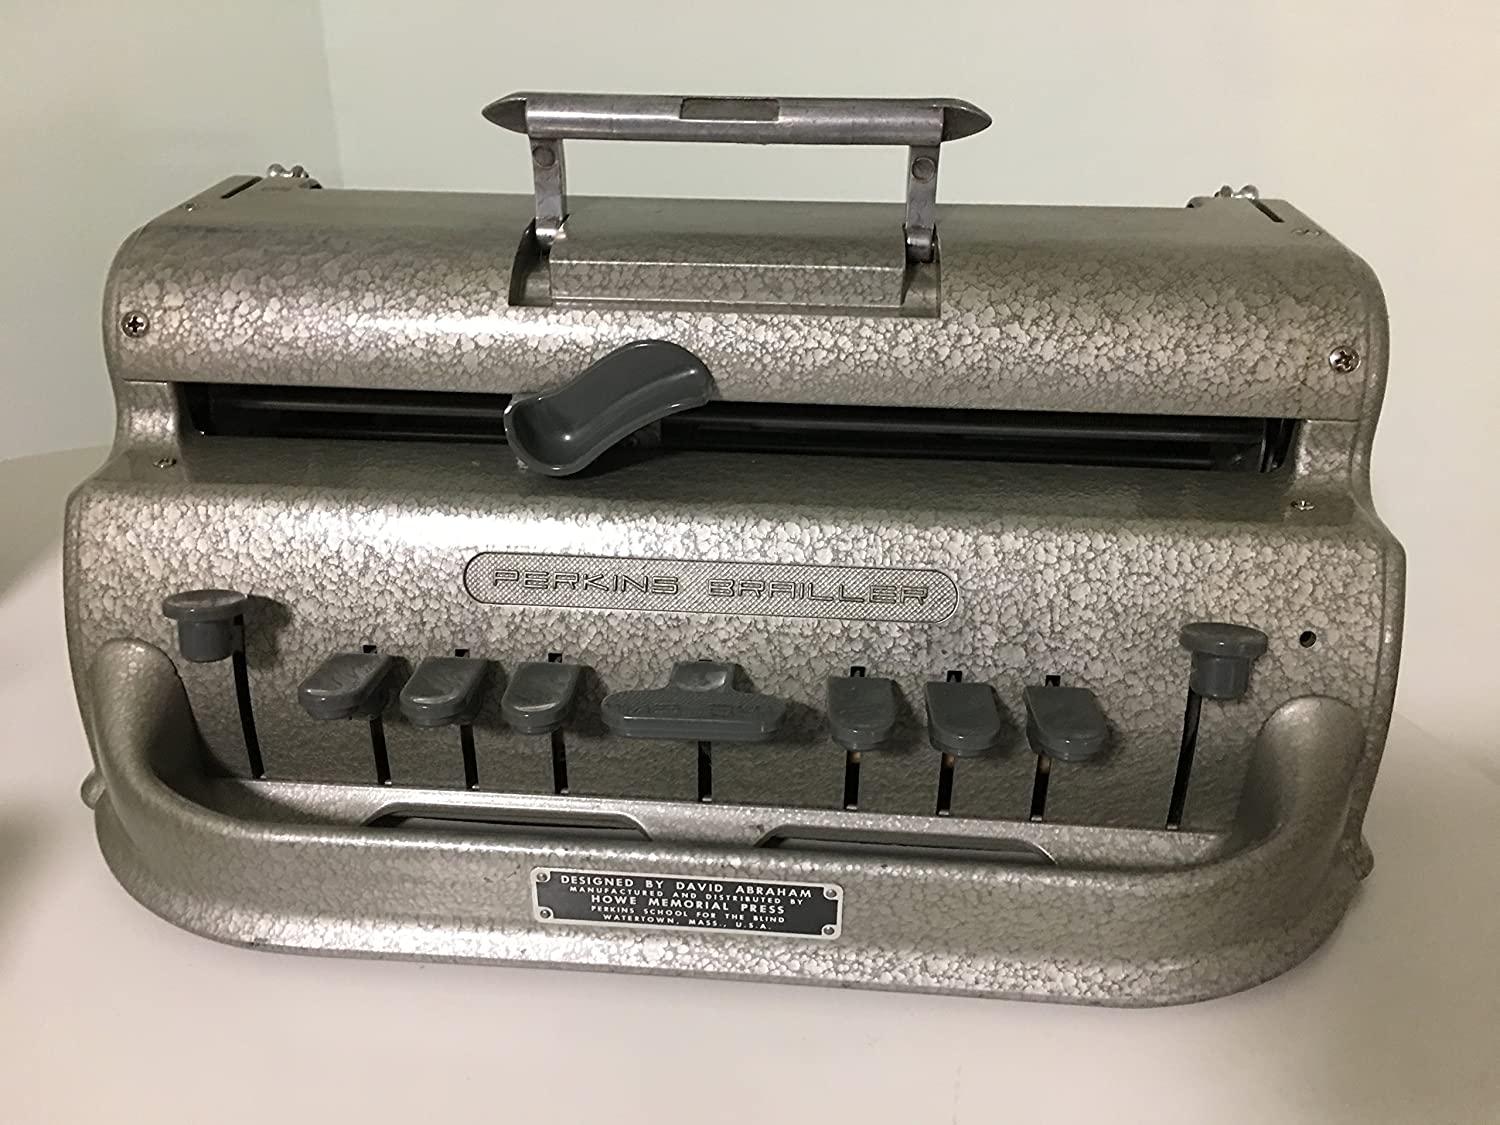 Perkins Brailler machine photo